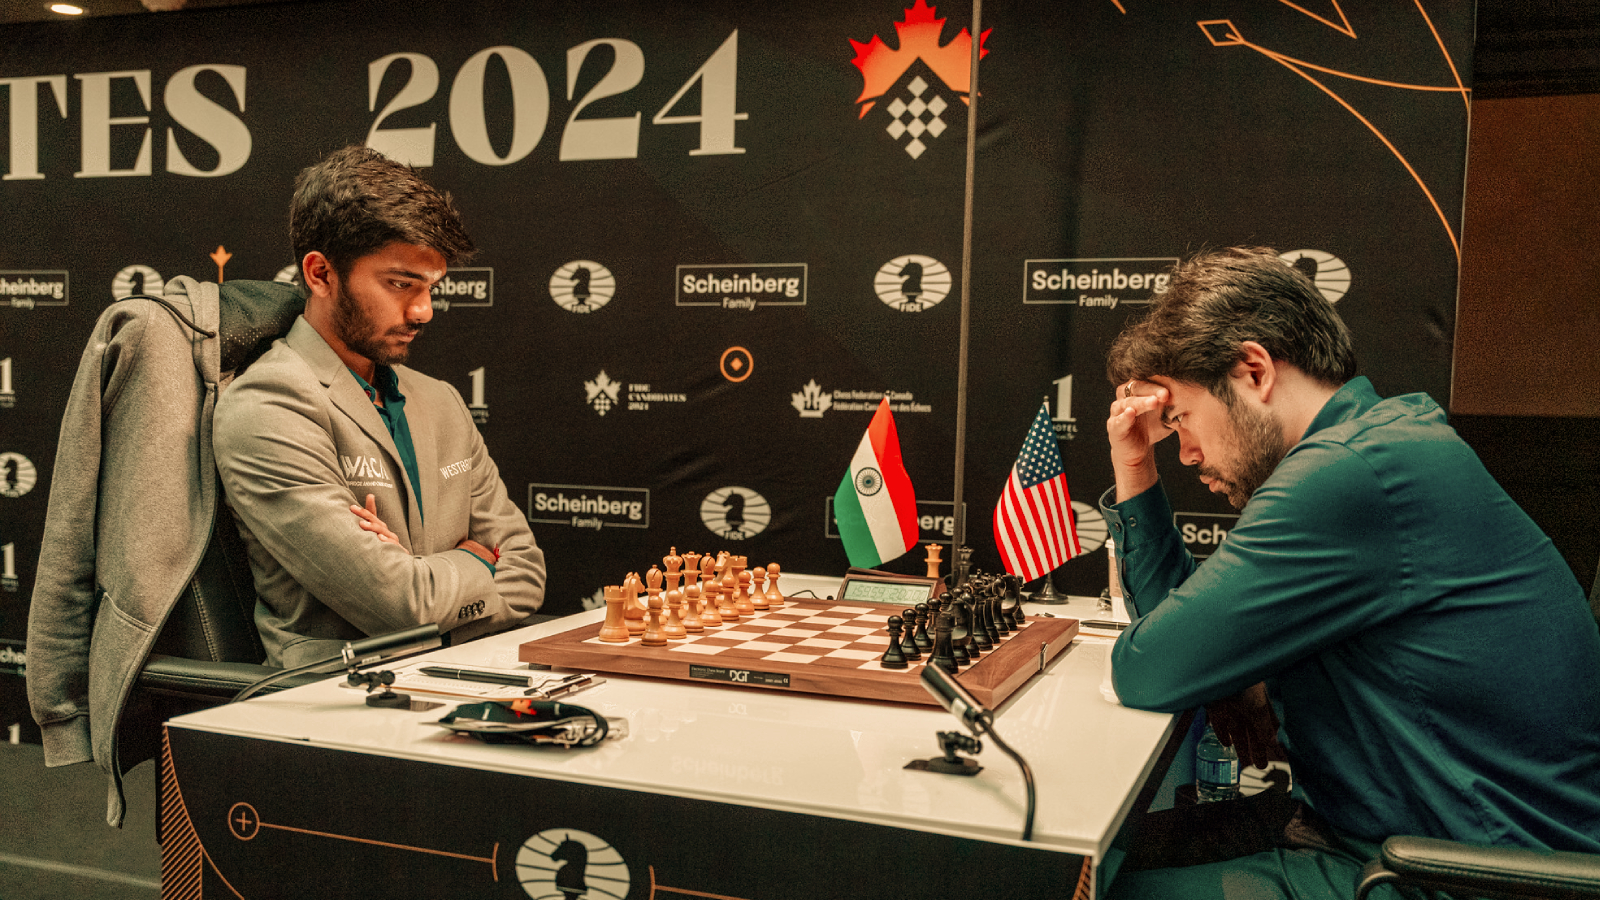 2024 年国际象棋候选人实时更新：古克什打平，他的命运取决于内波-卡鲁阿纳比赛；普拉格获胜，维迪特打平 | 国际象棋新闻